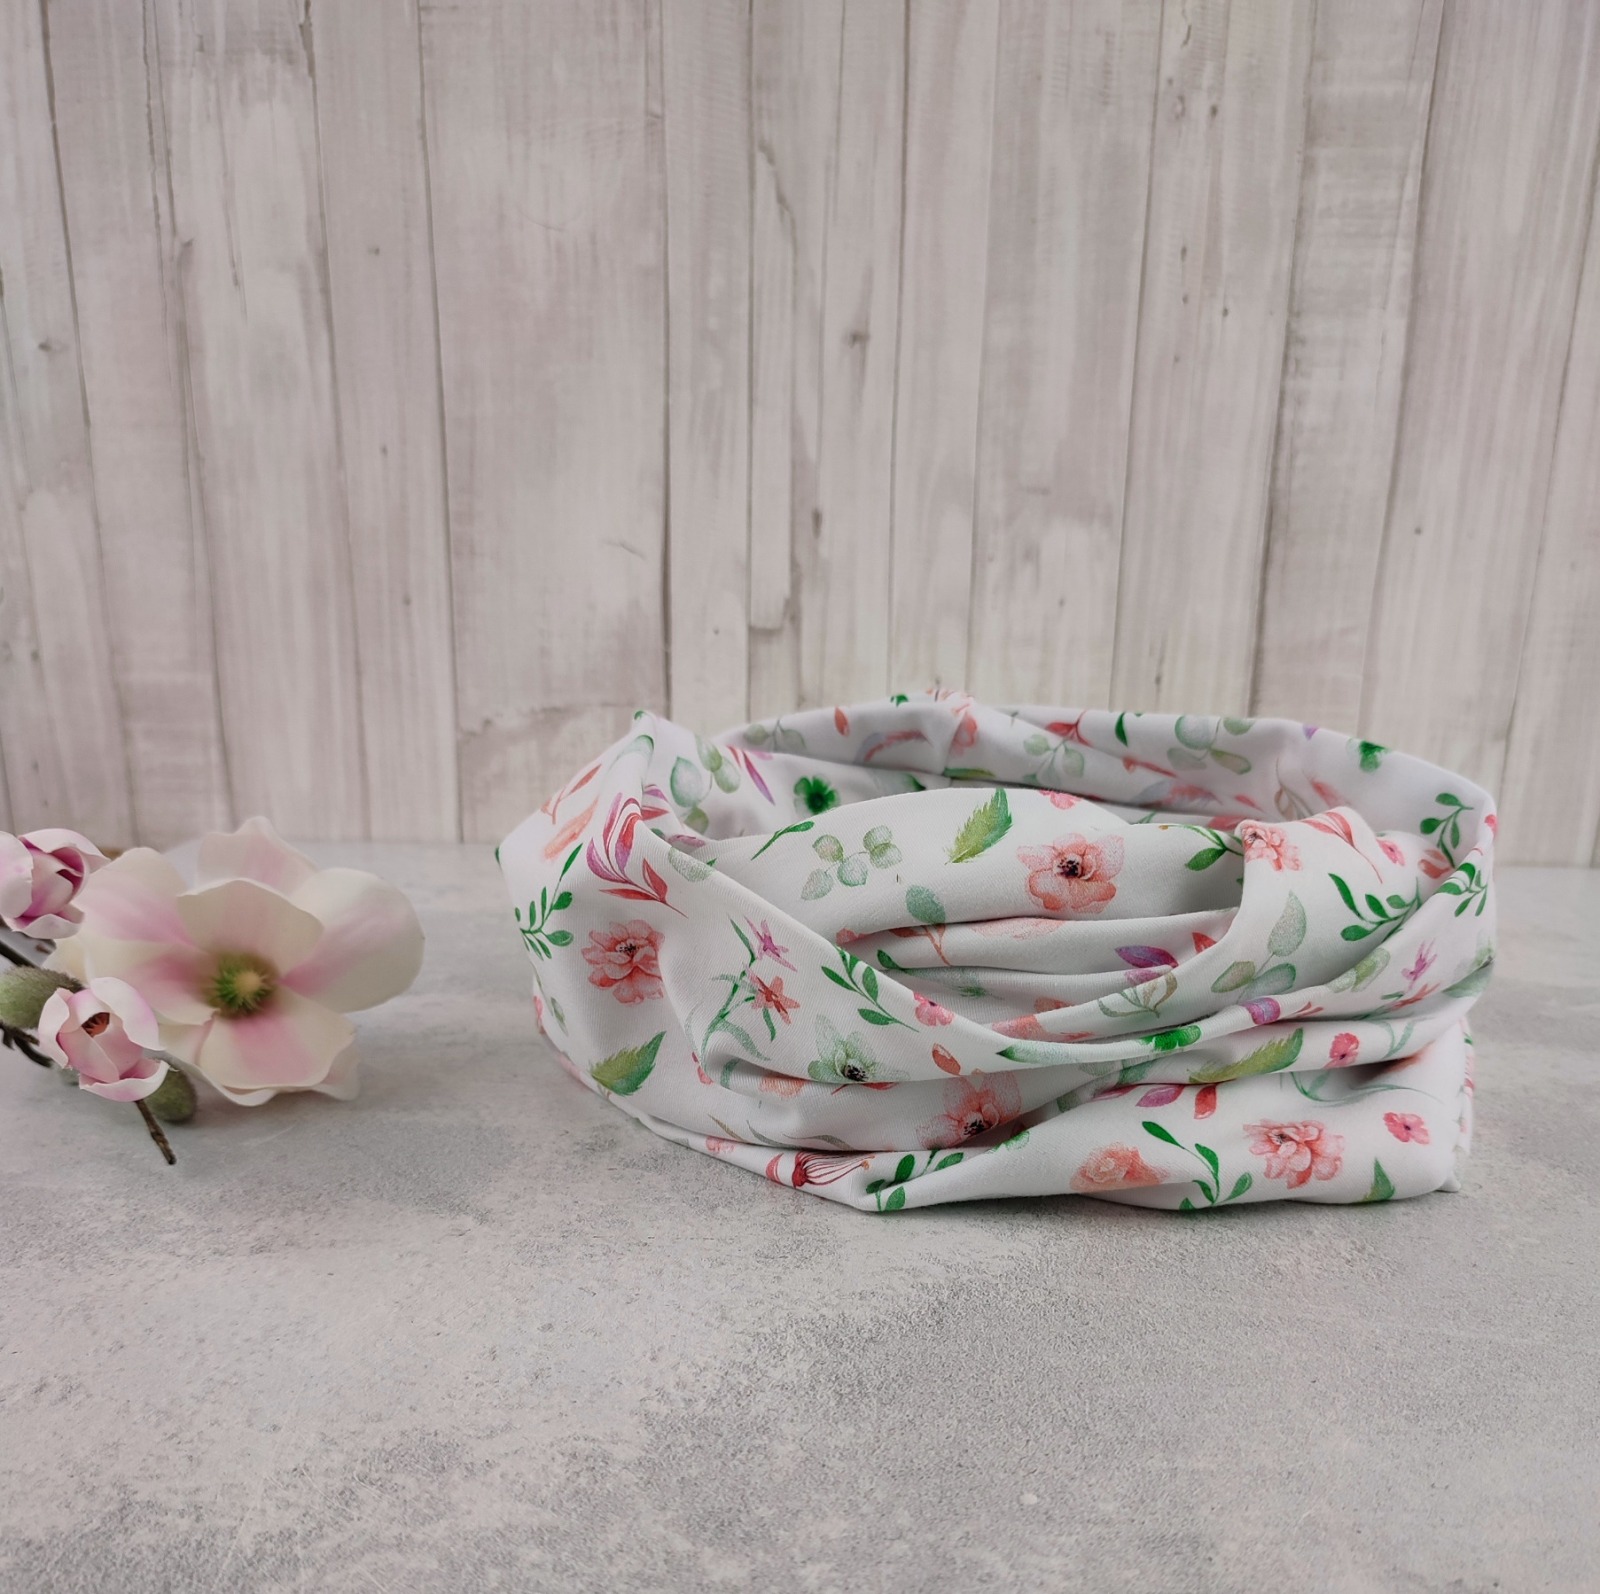 Loop Schlauchschal weiß mit kleinem Blumenmuster in lachsrosa und grün - Schal für Damen aus Jersey 6